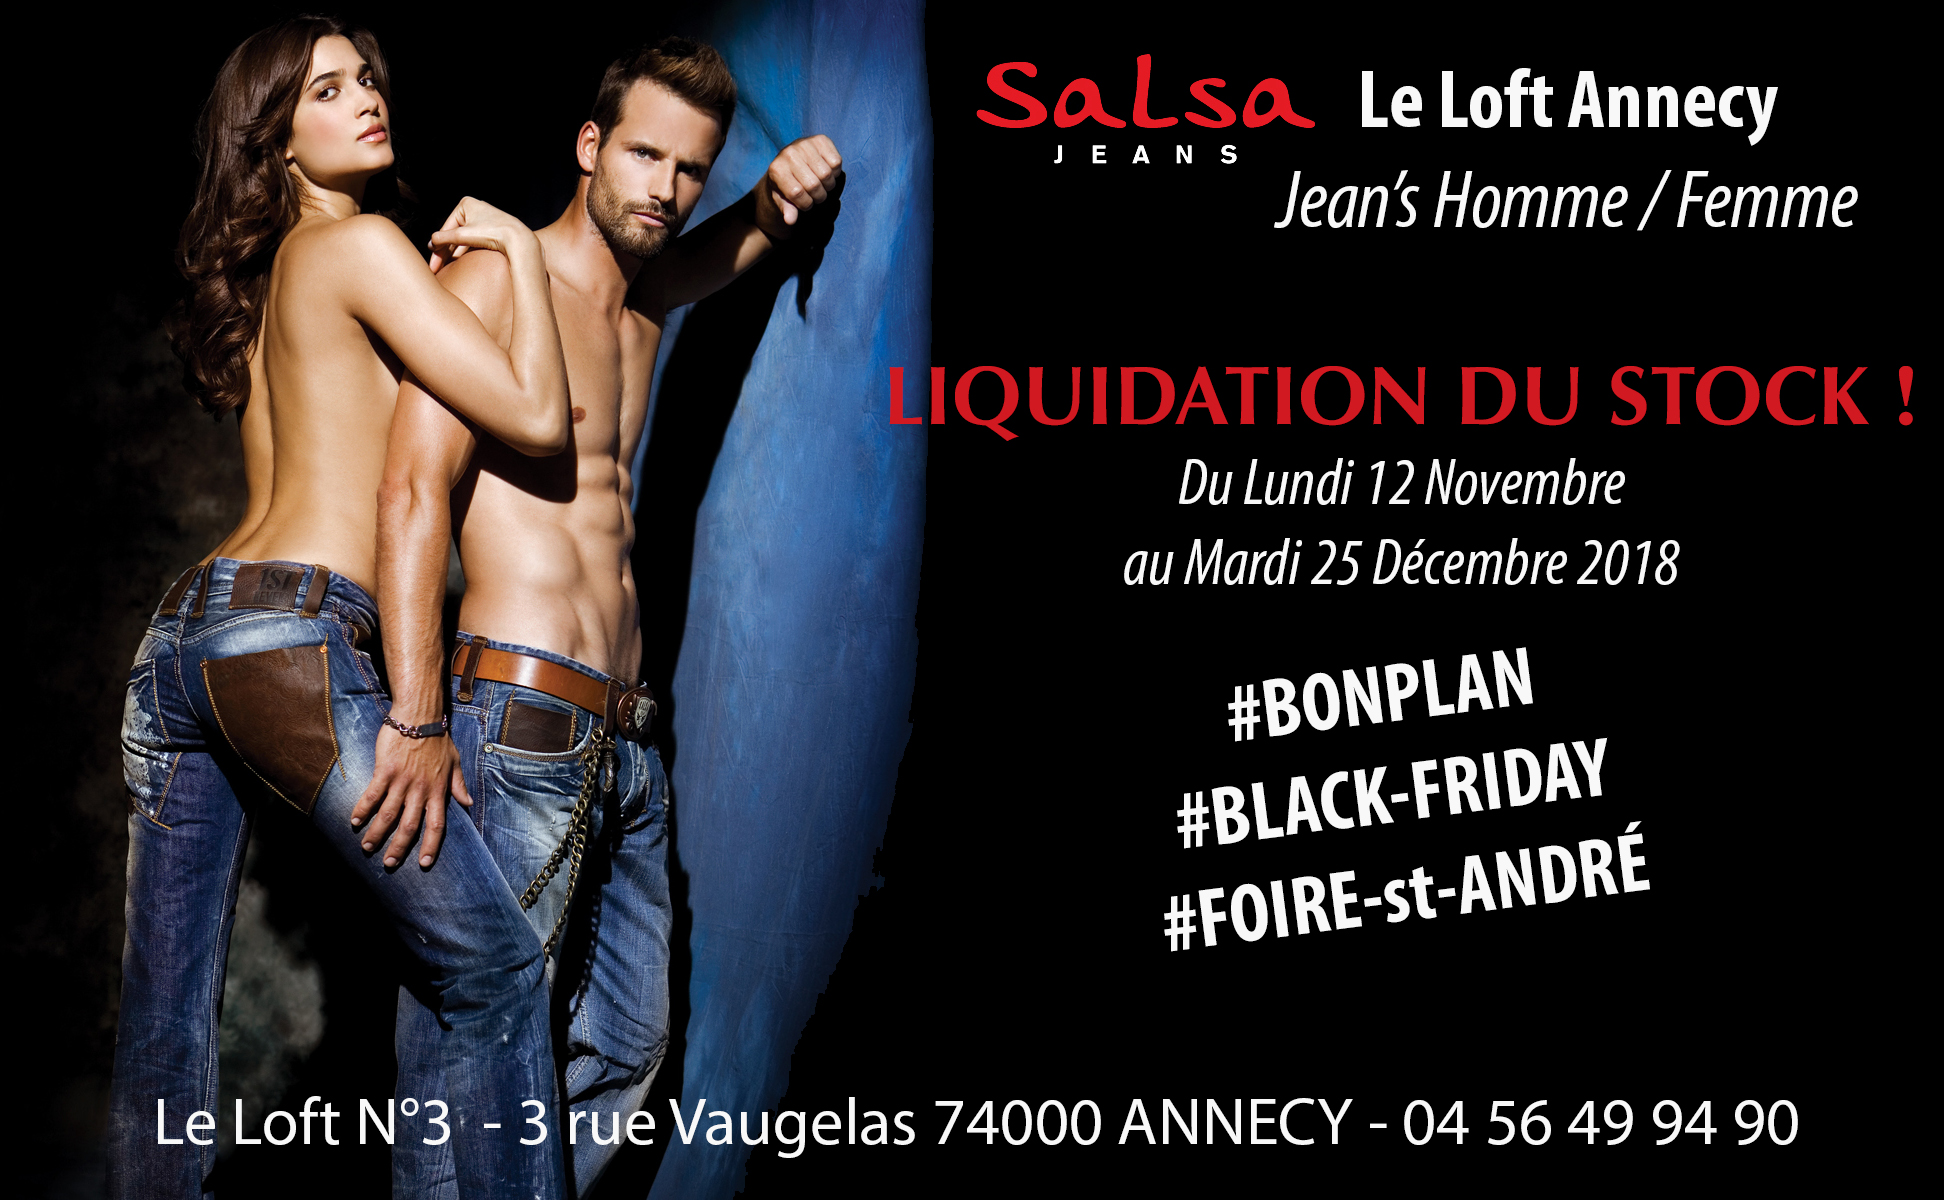 Grosse liquidation de Jeans "Salas" à Annecy avant les fêtes !